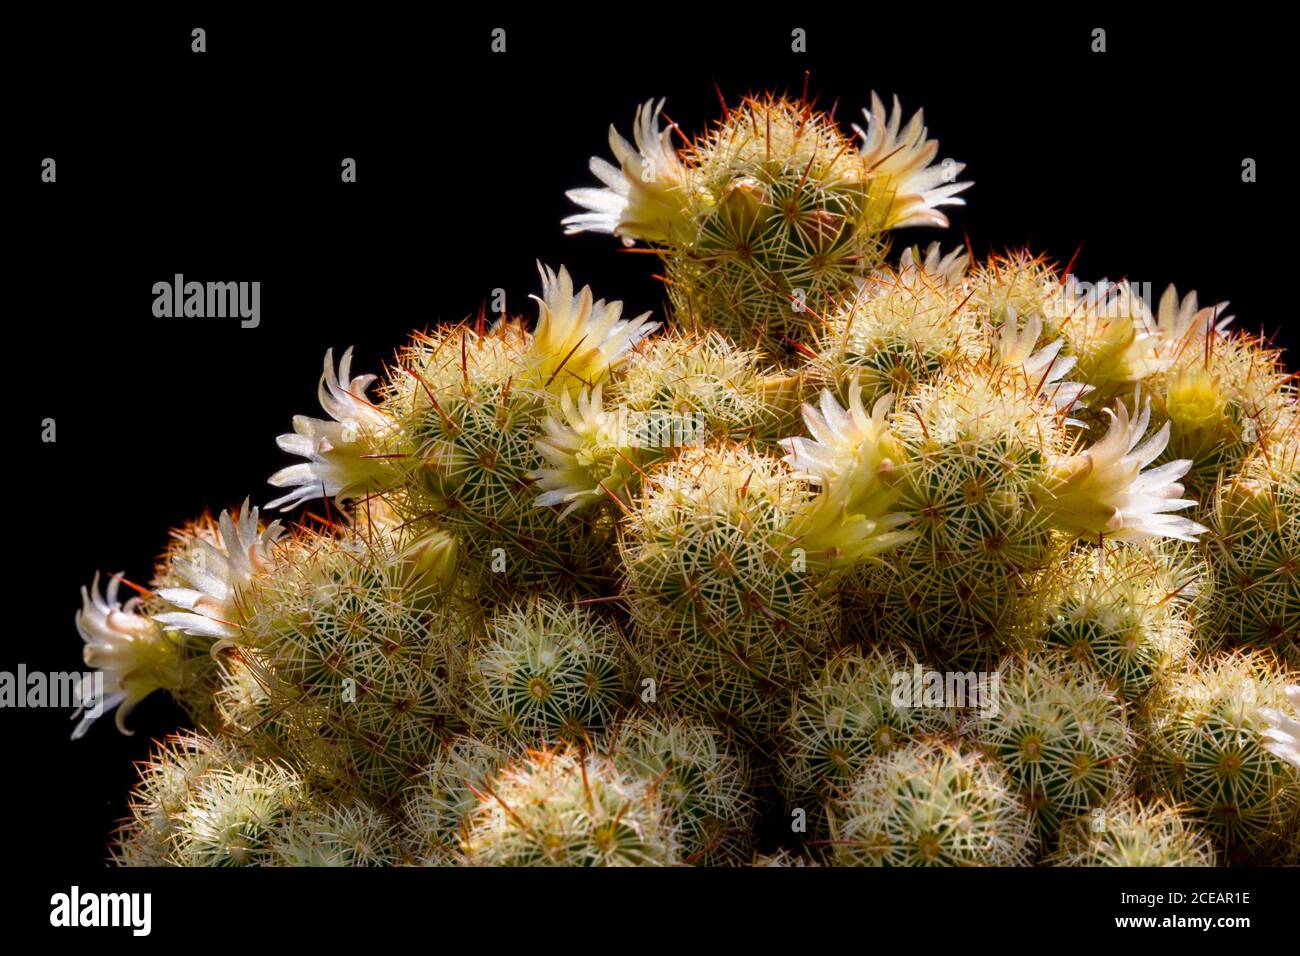 Flowering cactus, Mammillaria Elongata. Cactus flowers. Stock Photo